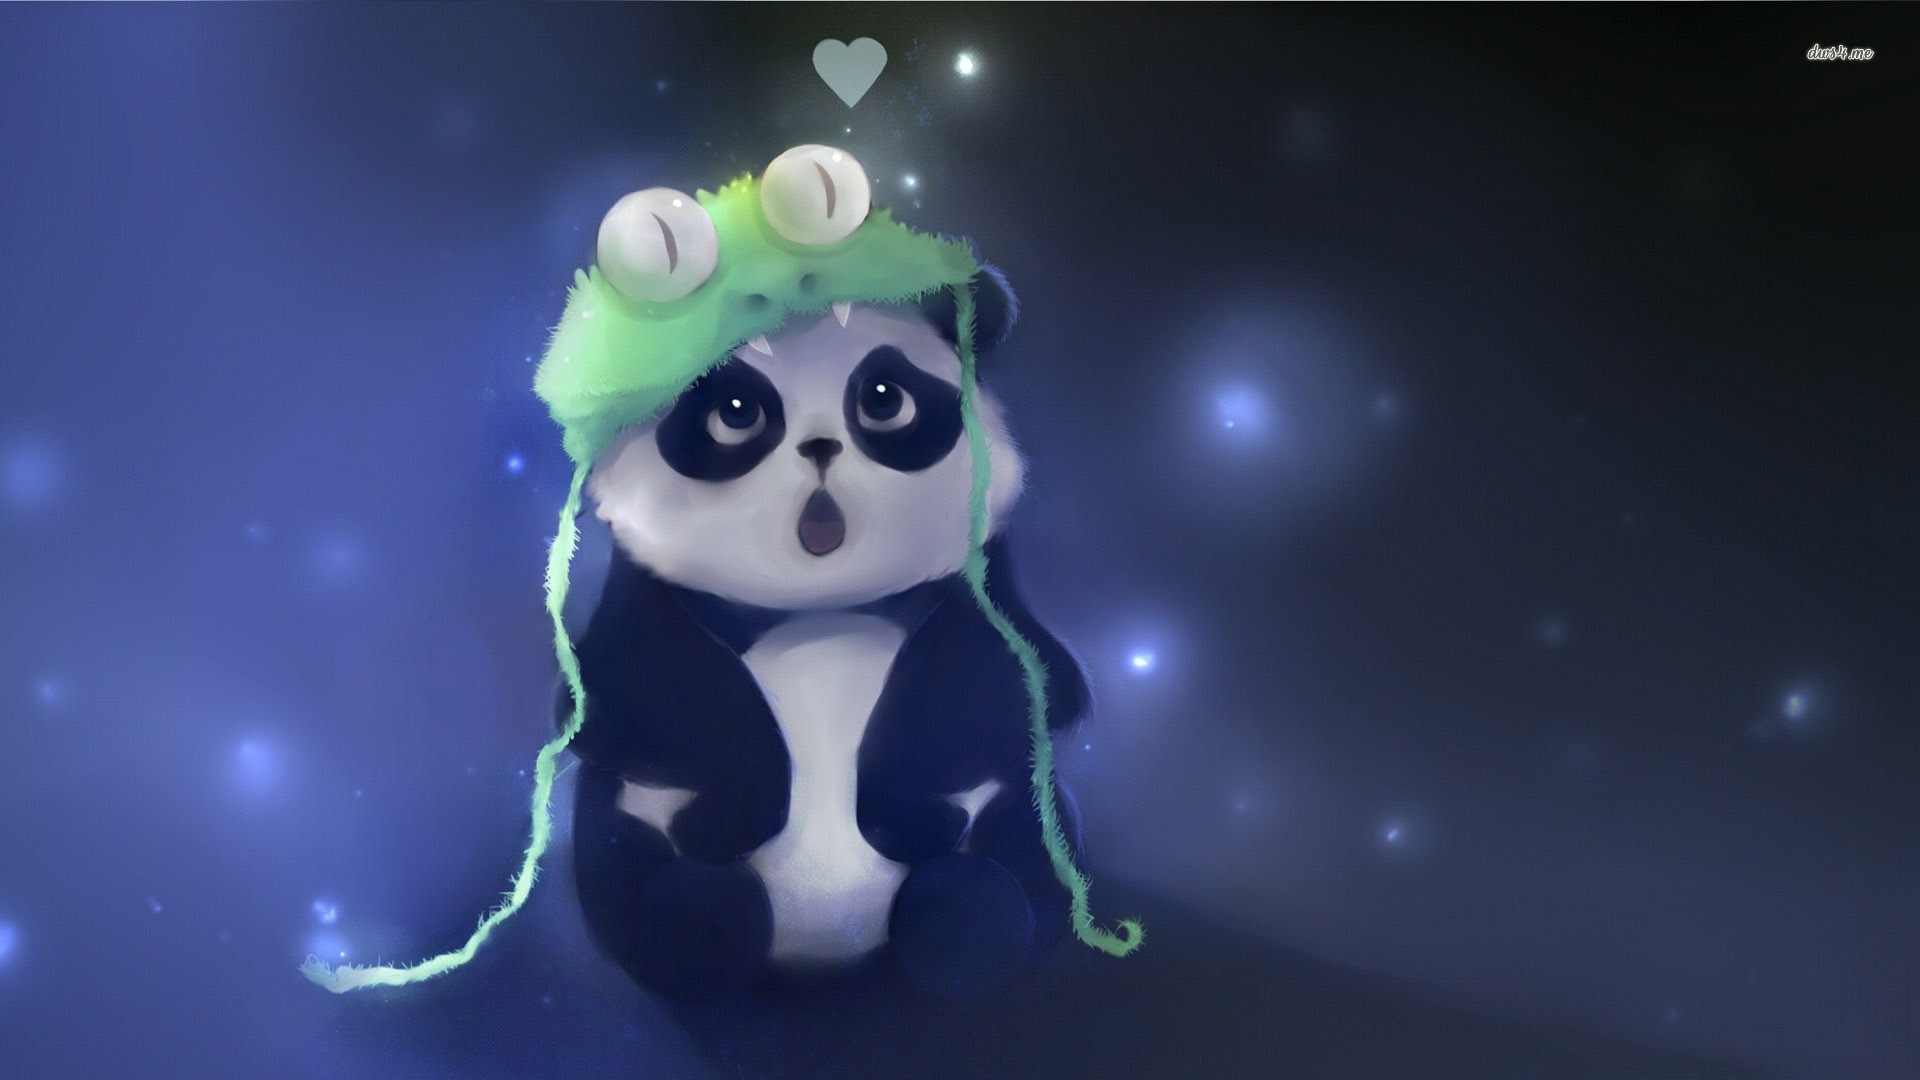 Cute Panda fond ecran hd